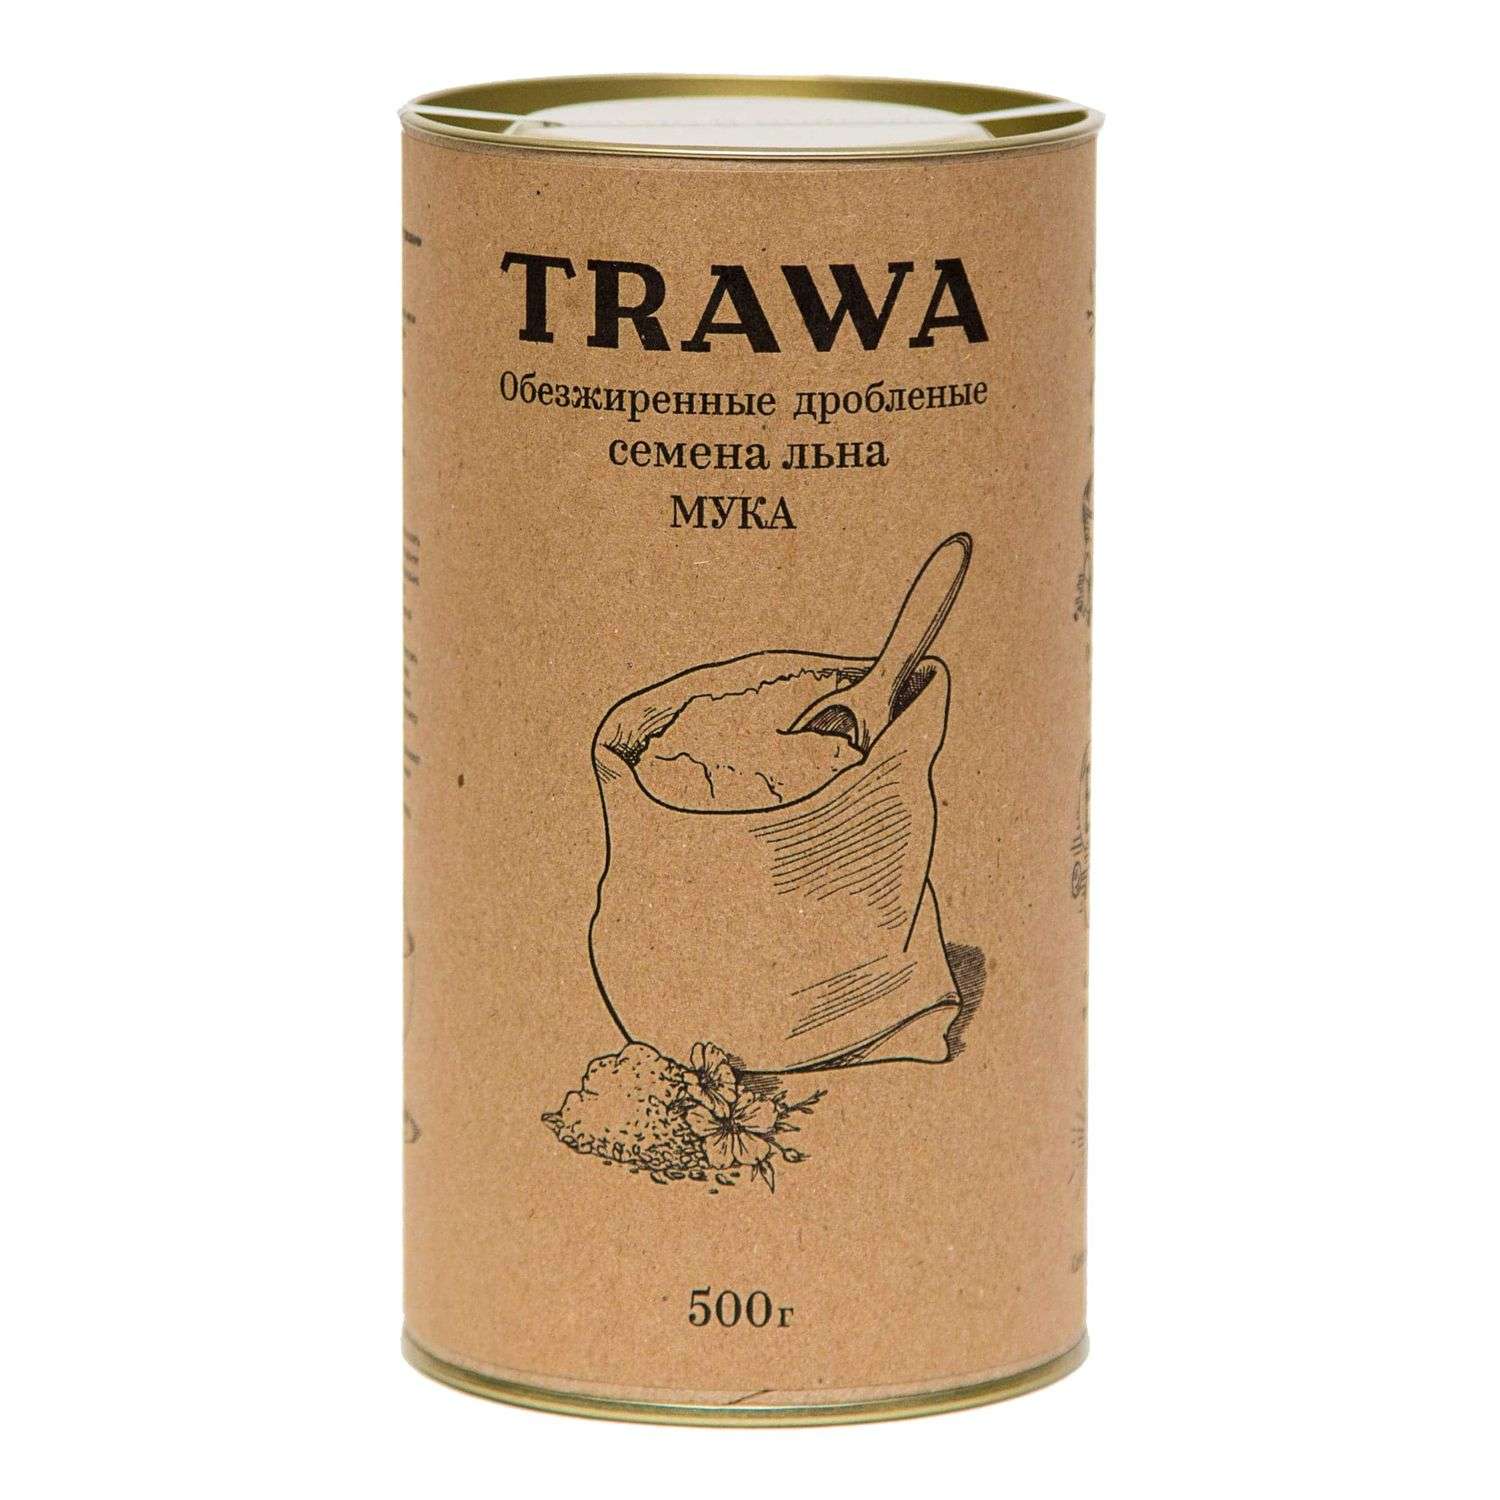 Мука TRAWA обезжиренные дробленые семена льна 500г - фото 1